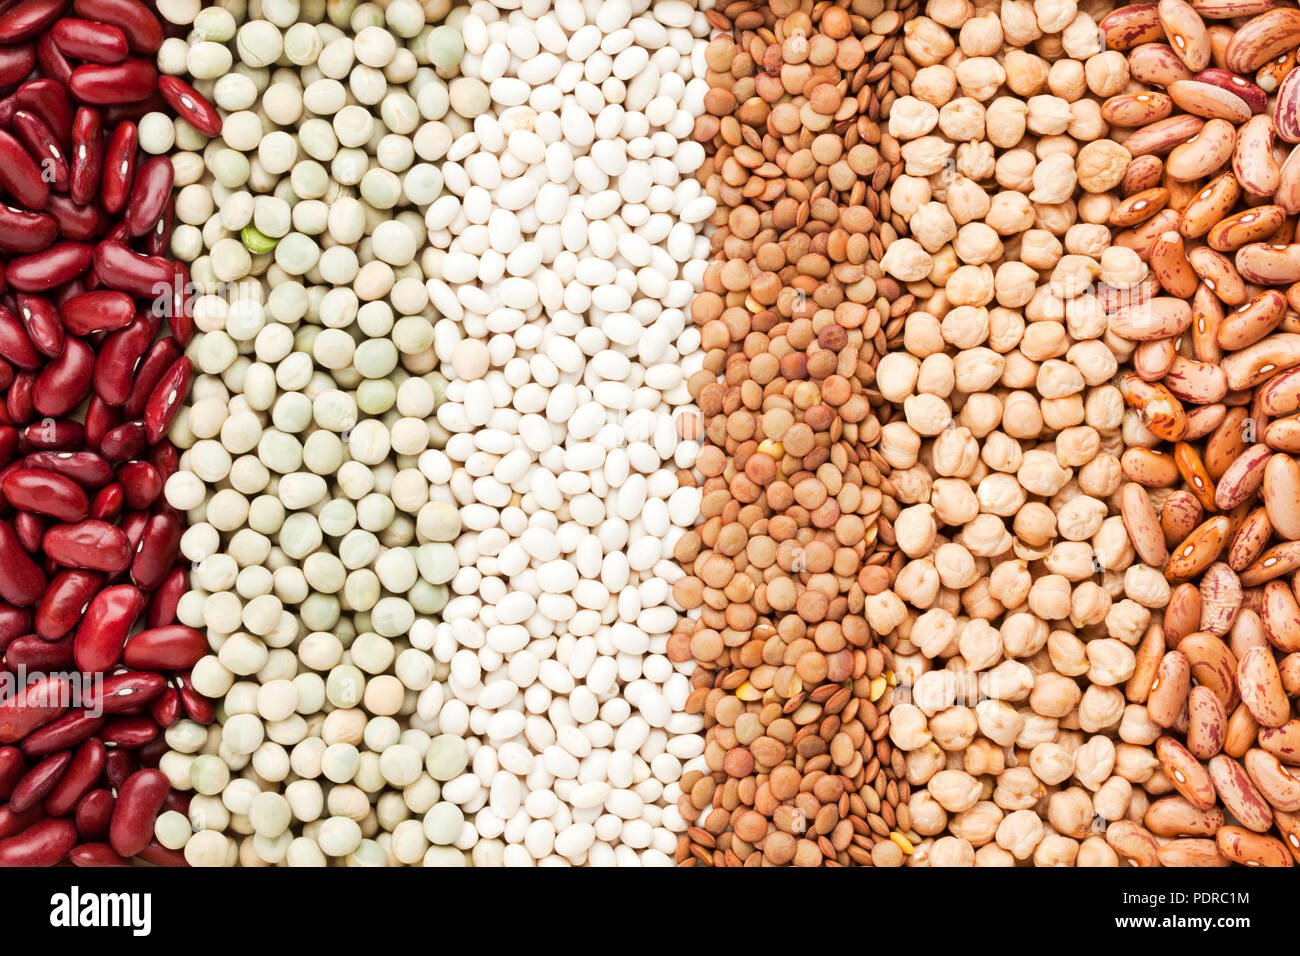 Hintergrund der verschiedenen Hülsenfrüchten wie Bohnen, Erbsen, weiße Bohnen, Linsen, Kichererbsen und Pintobohnen Stockfoto